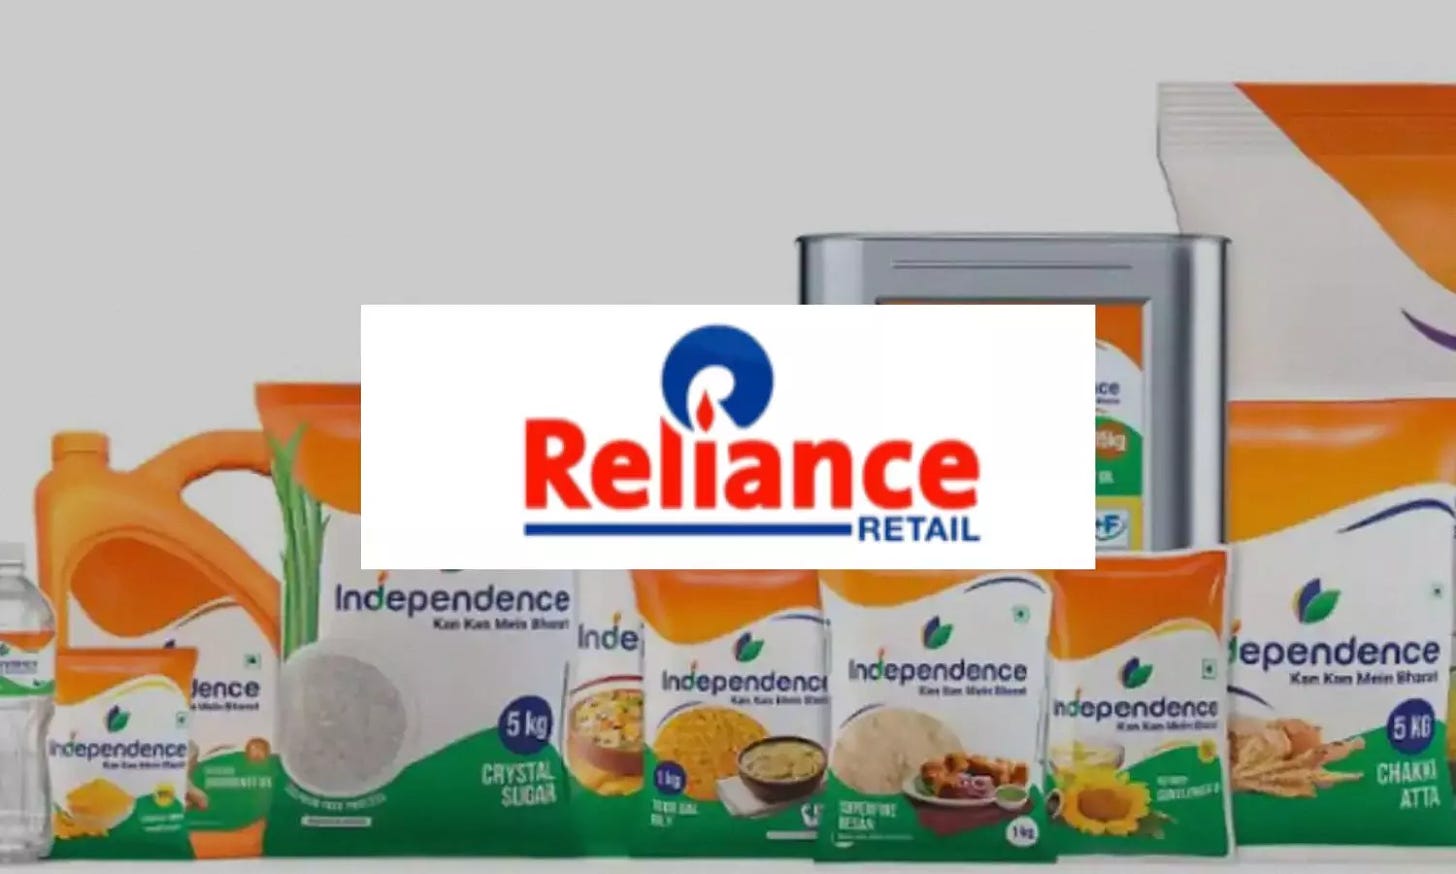 ഇനി കളിമാറും; എഫ്എംസിജി ബ്രാൻഡുമായി റിലയൻസ് | reliance consumer products  launches fmcg brand independence - riseshine.in